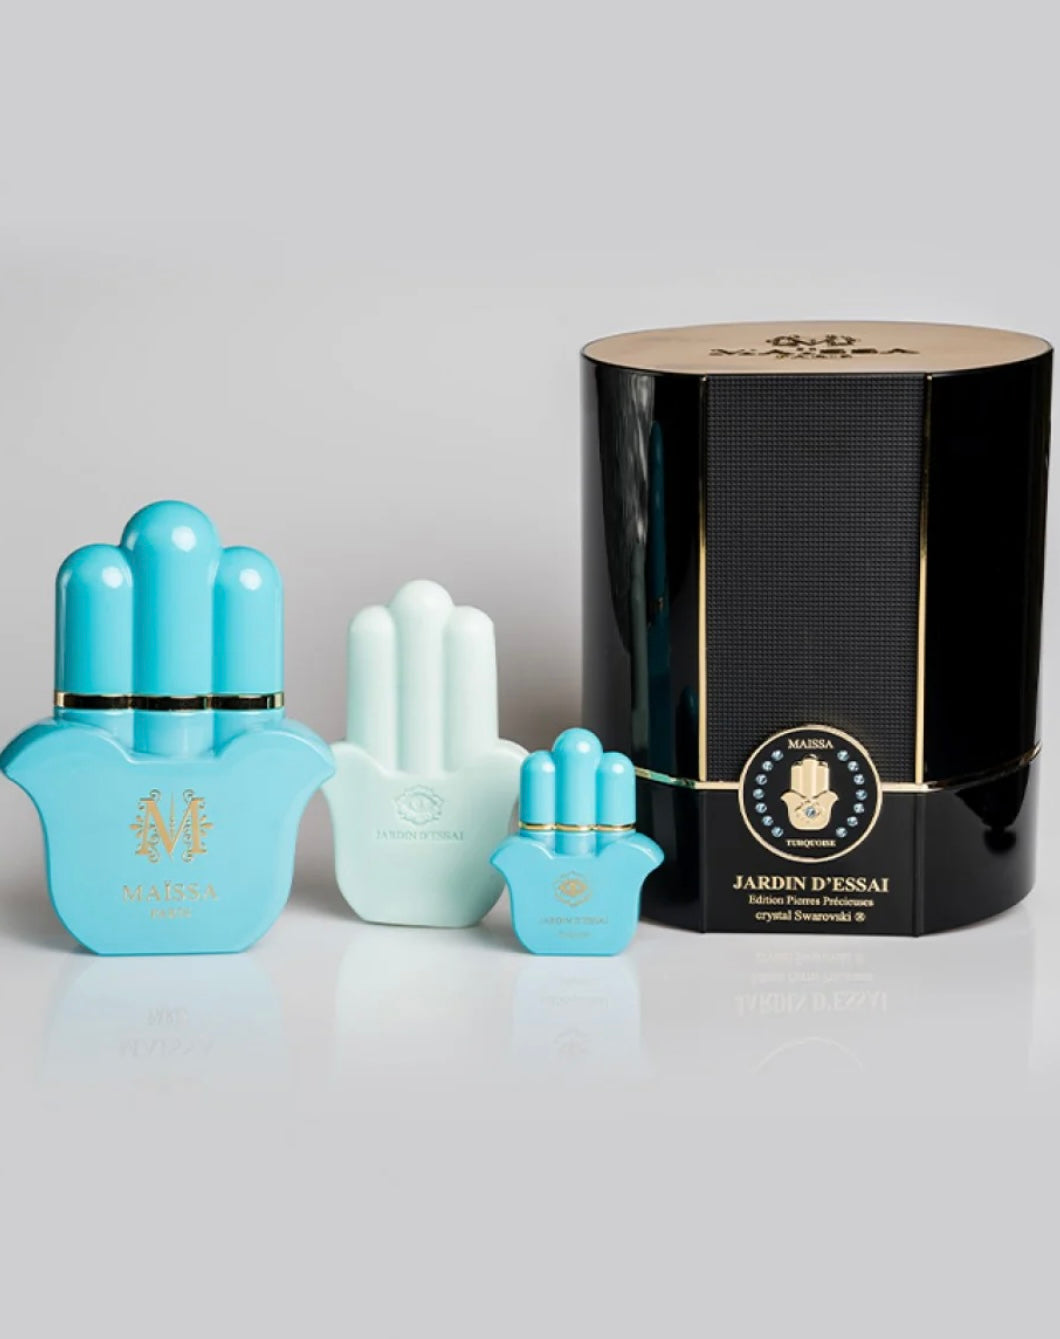 Maissa Paris Jardin d’essai Swarovski crystal perfume set